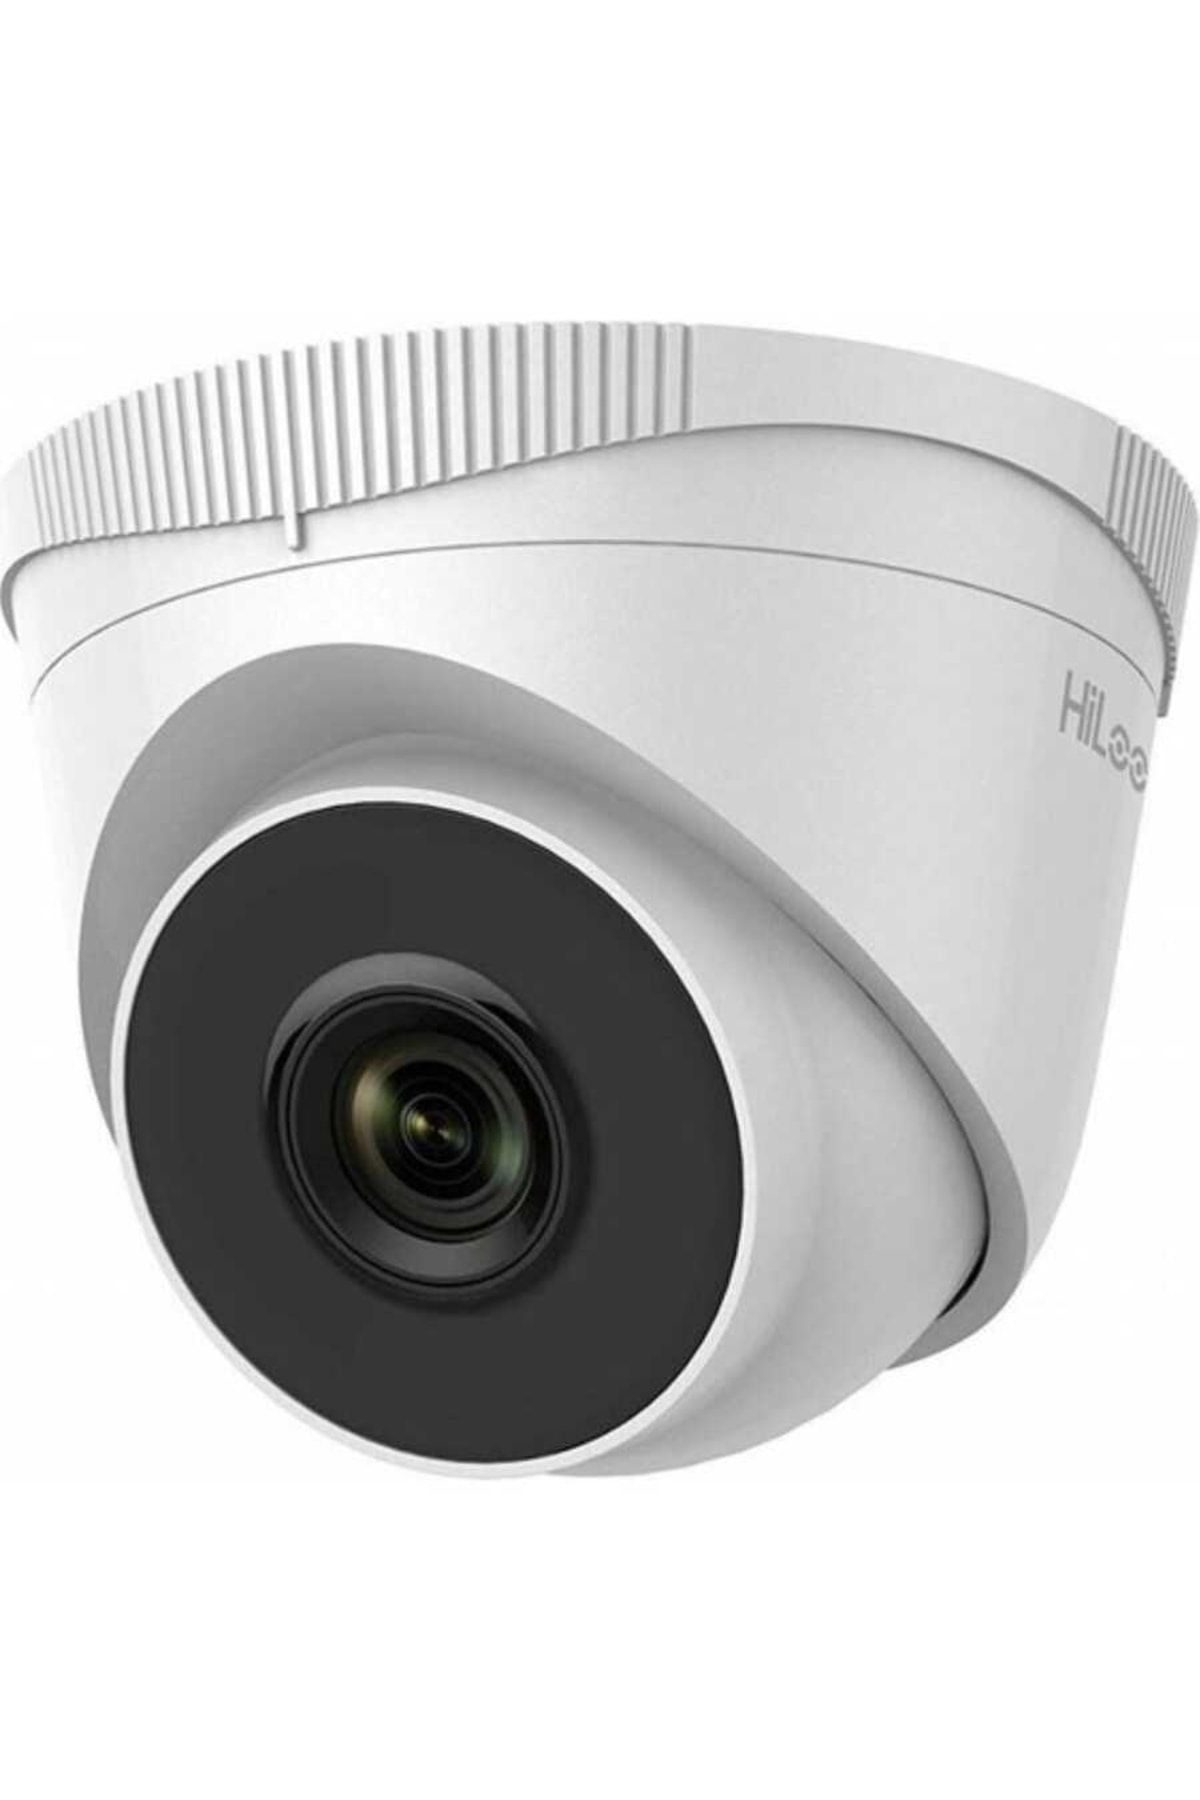 Hilook Ipc-t240h-f 4mp 2.8mm Ip Ir Dome Kamera